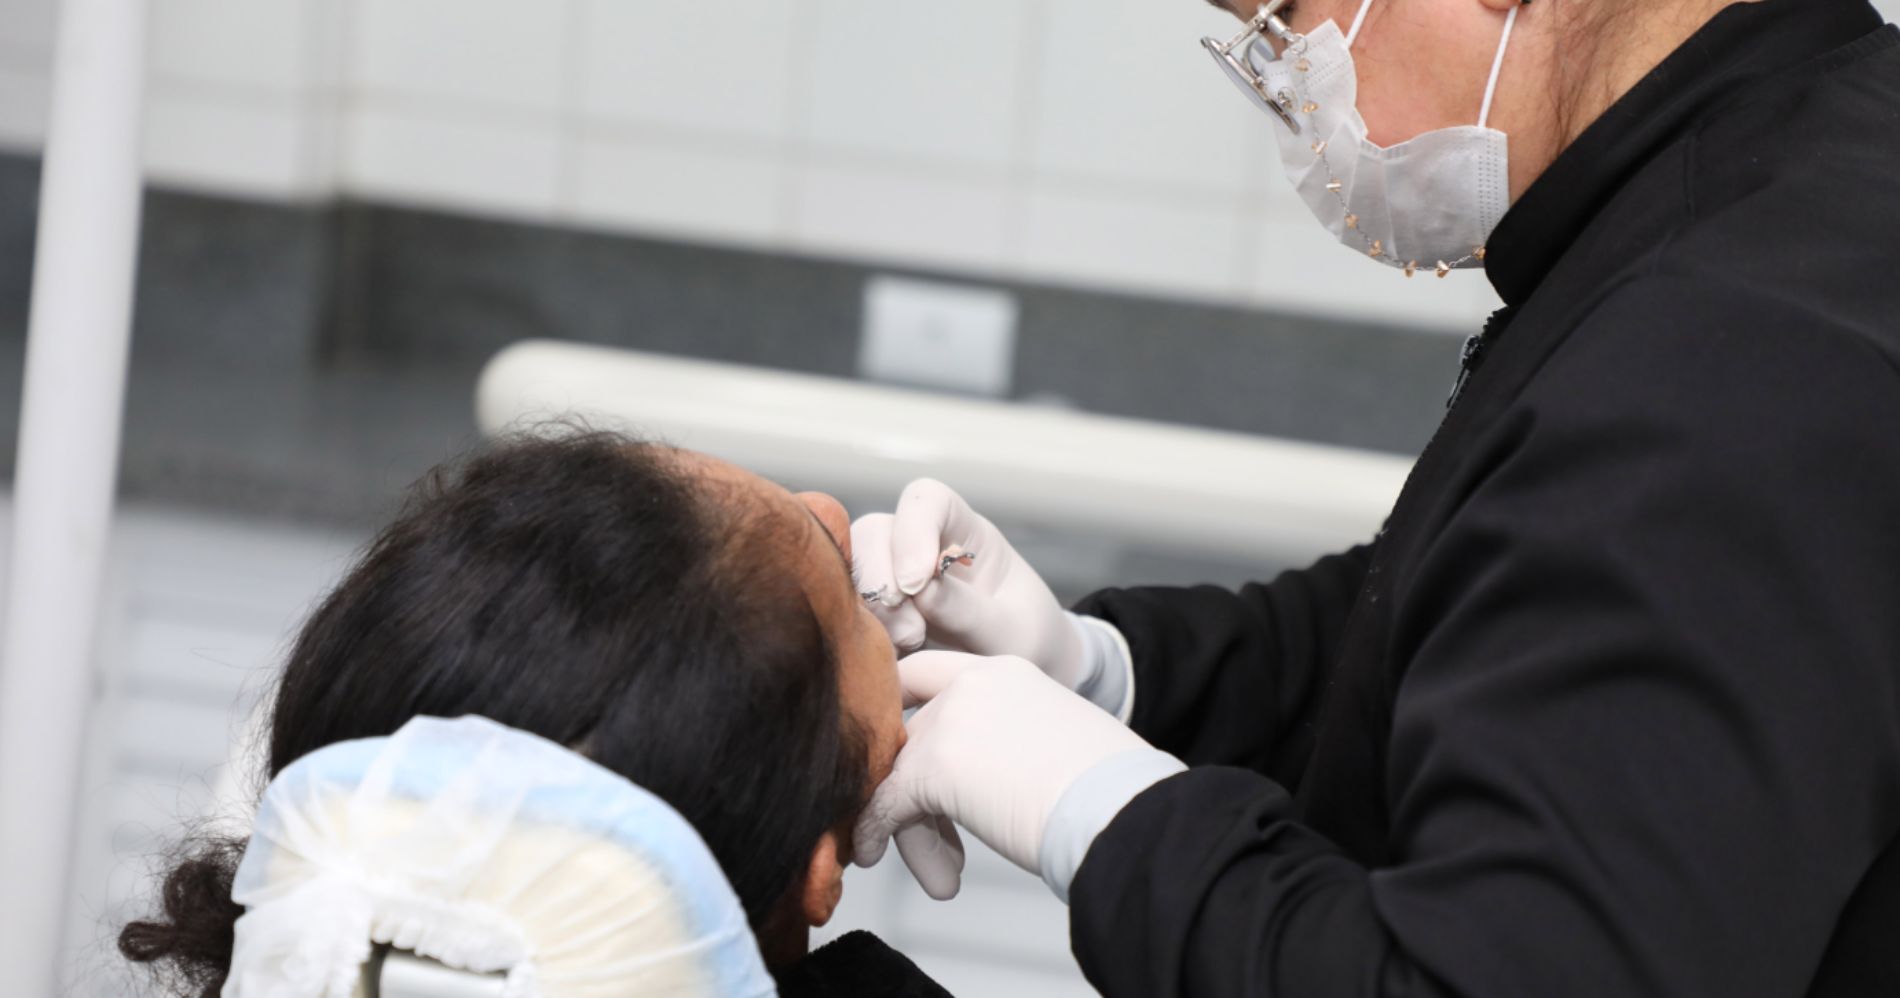 Prefeitura de Pinhais promove serviços especializados em odontologia pelo Programa Brasil Sorridente